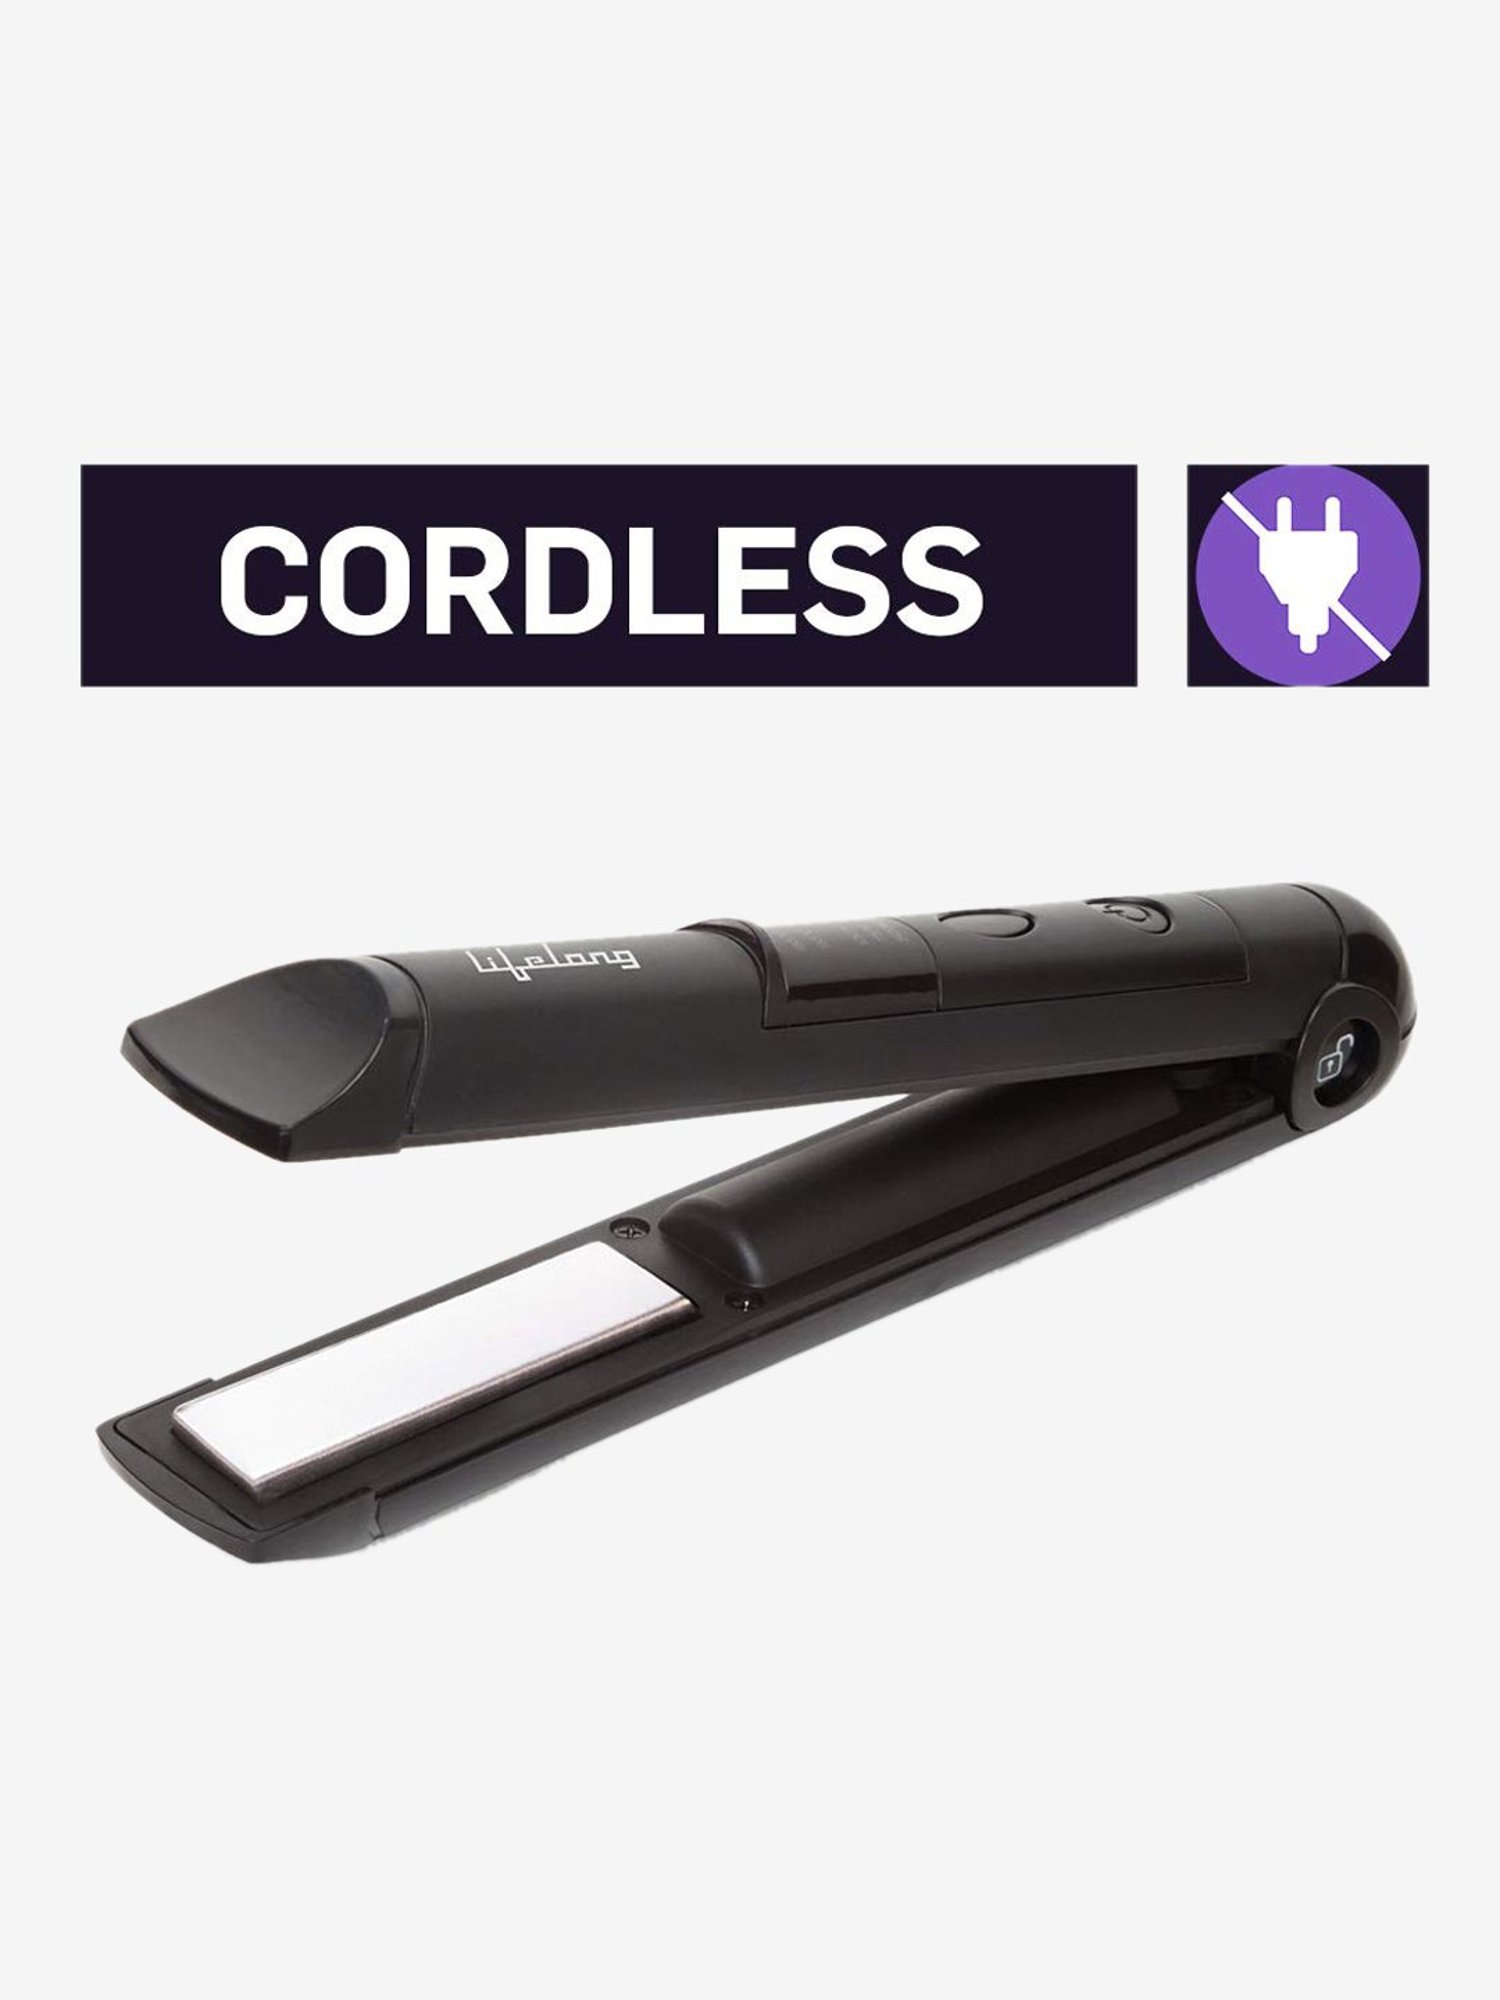 easymoss cordless hair straightener